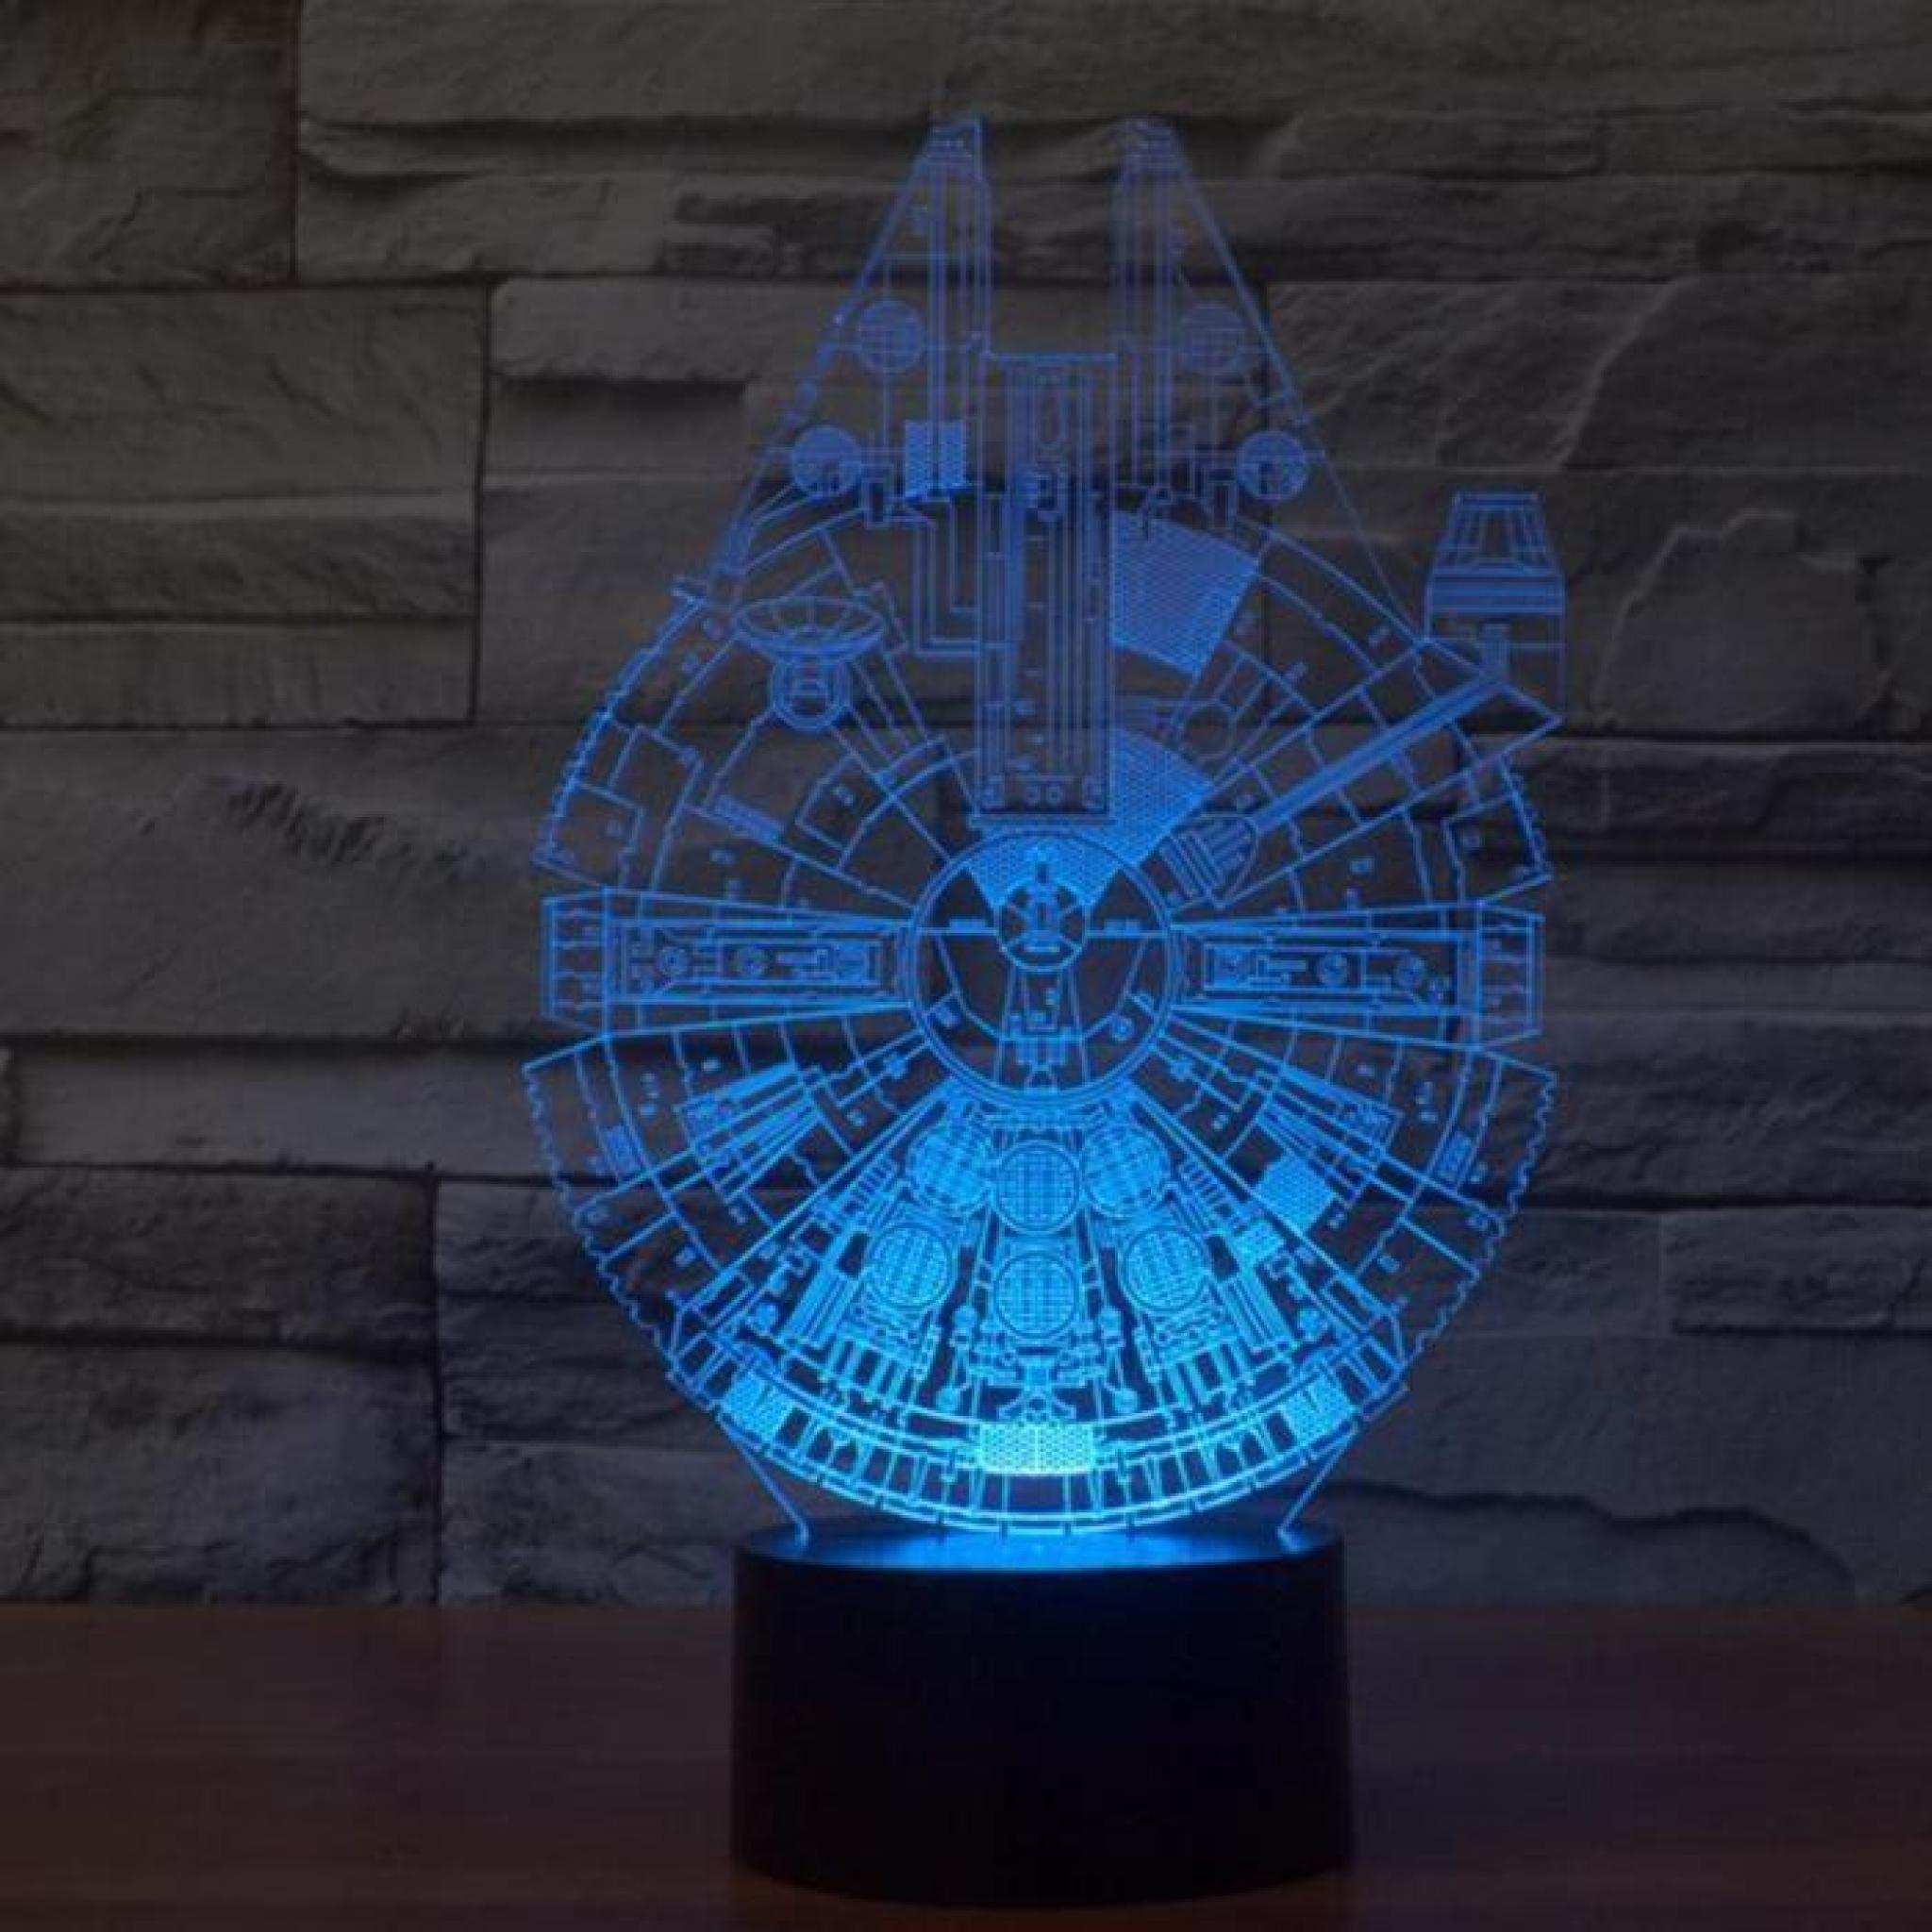 Star Wars Millennium Falcon 3D stéréoscopiques visuelle Lumière acrylique Lampe Fashion Modeling Veilleuse pas cher